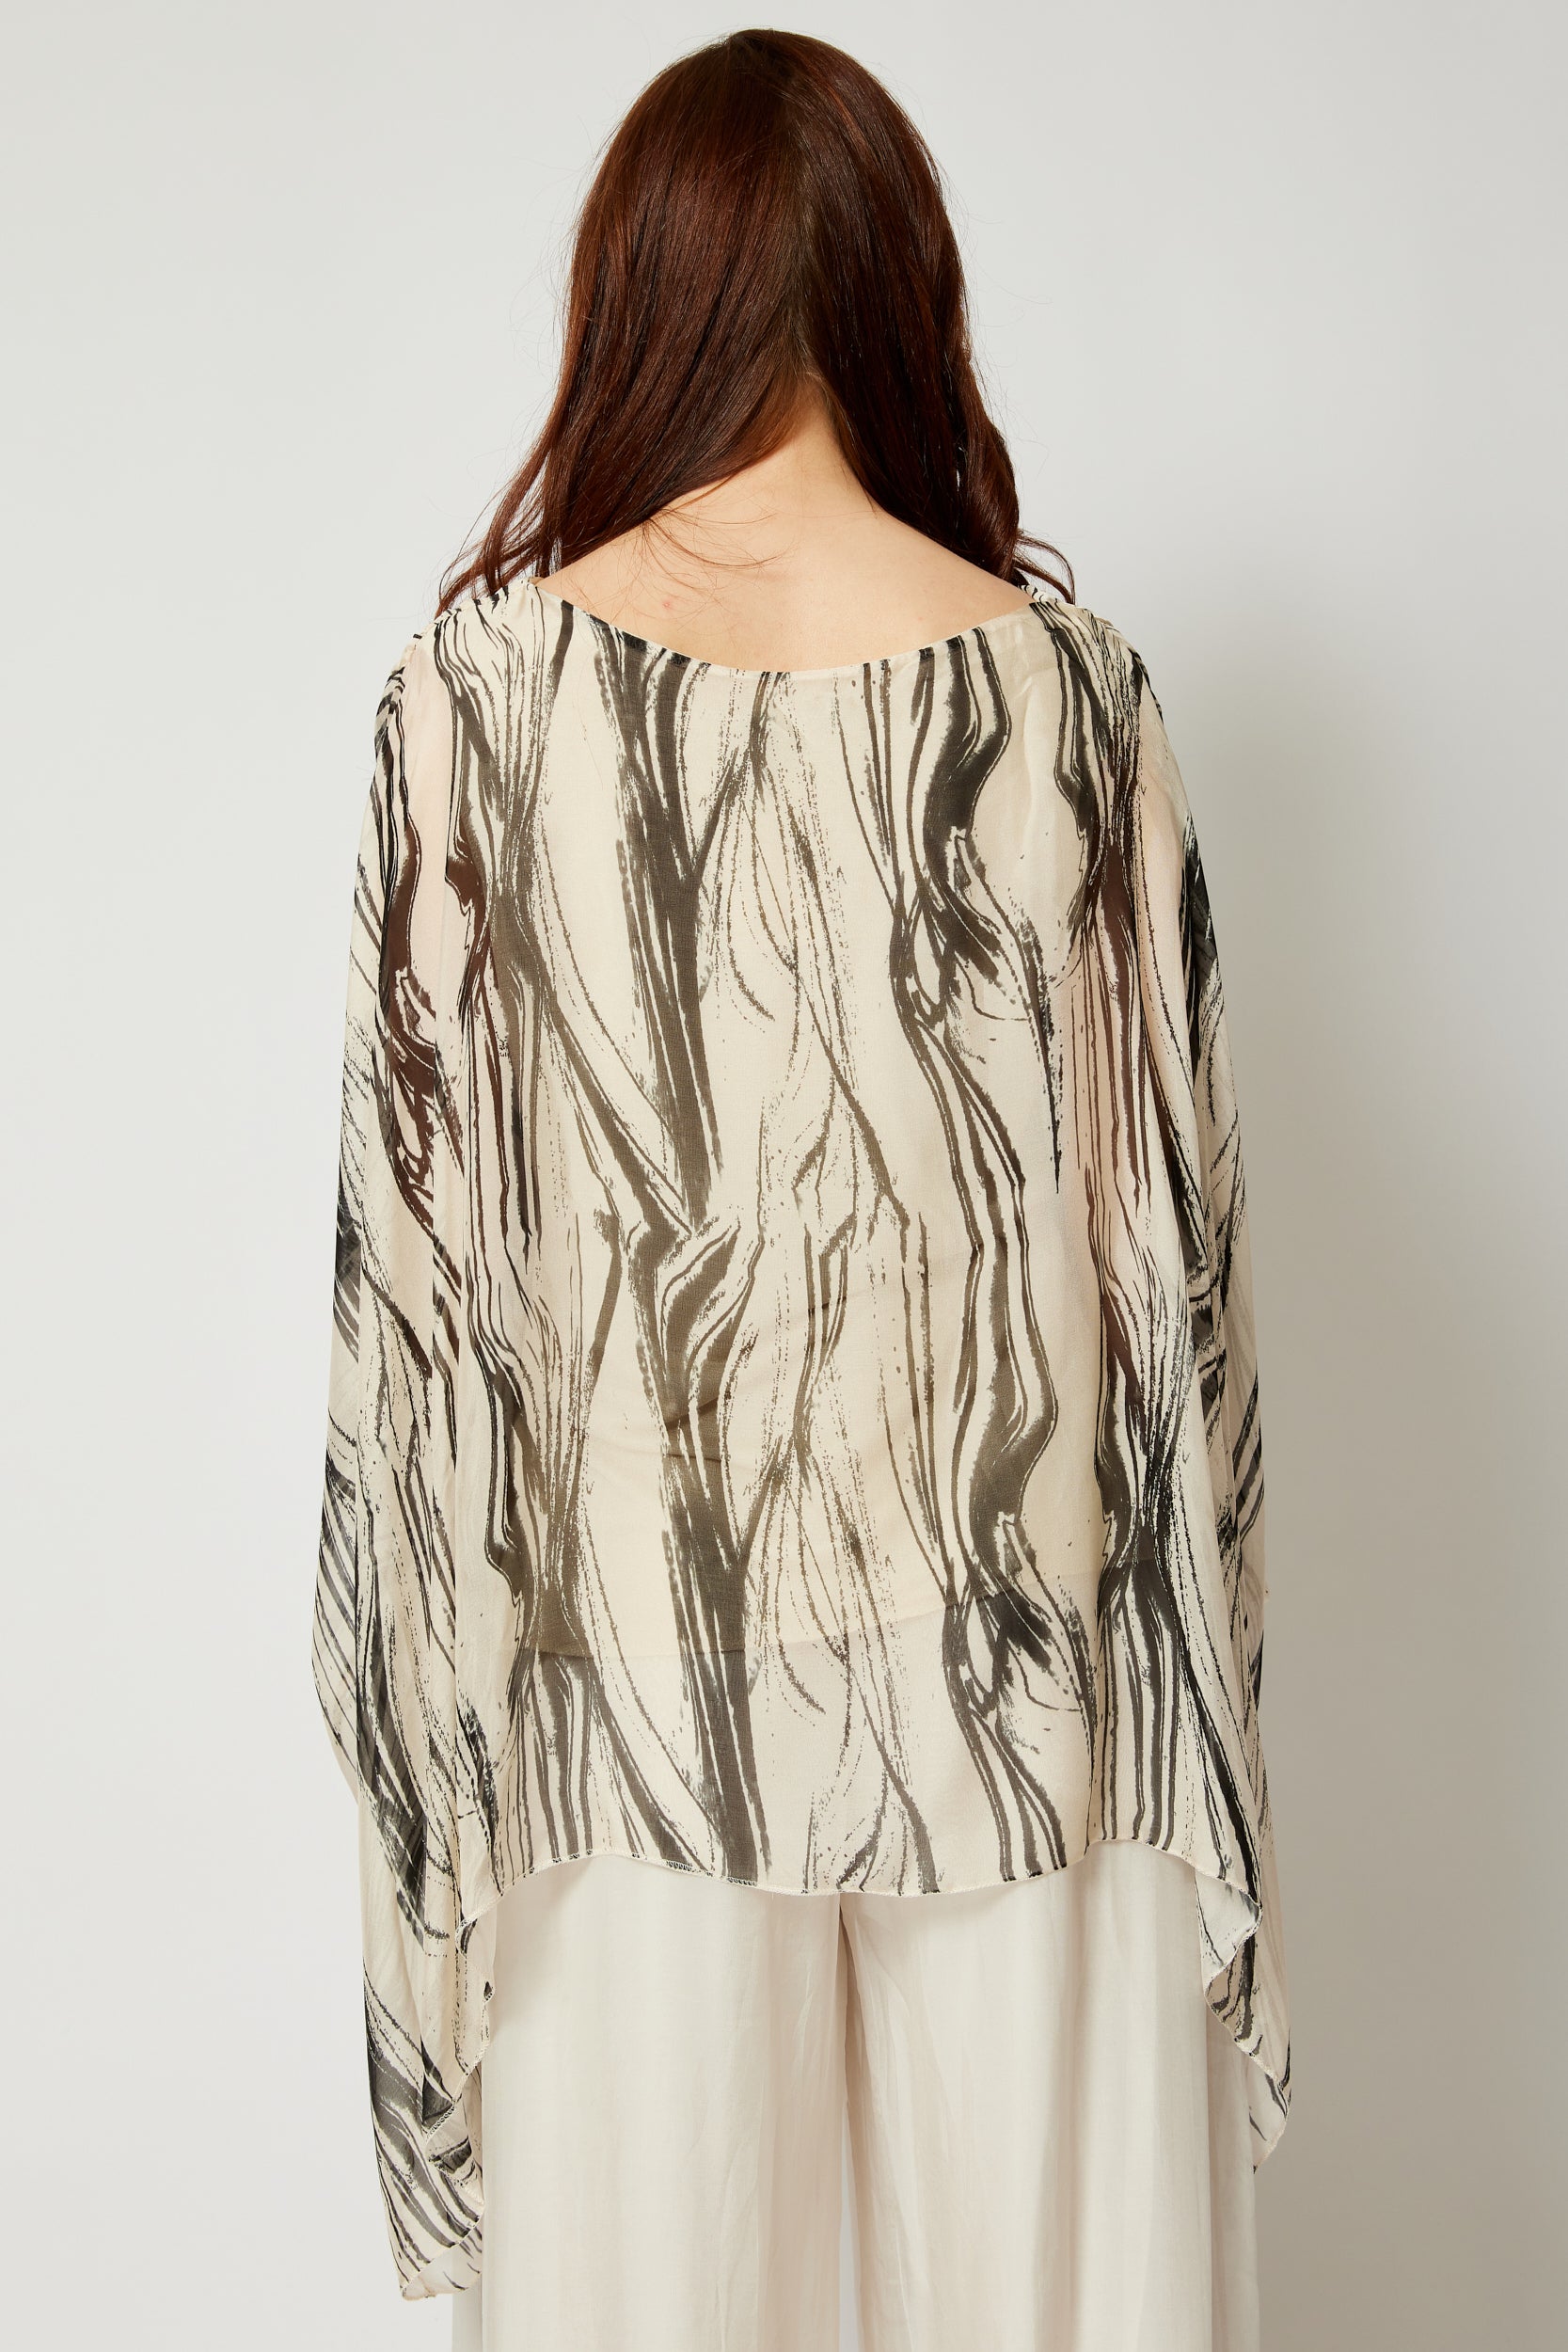 Italian Silk Brushstroke Pattern Flowing Top - Jacqueline B Clothing